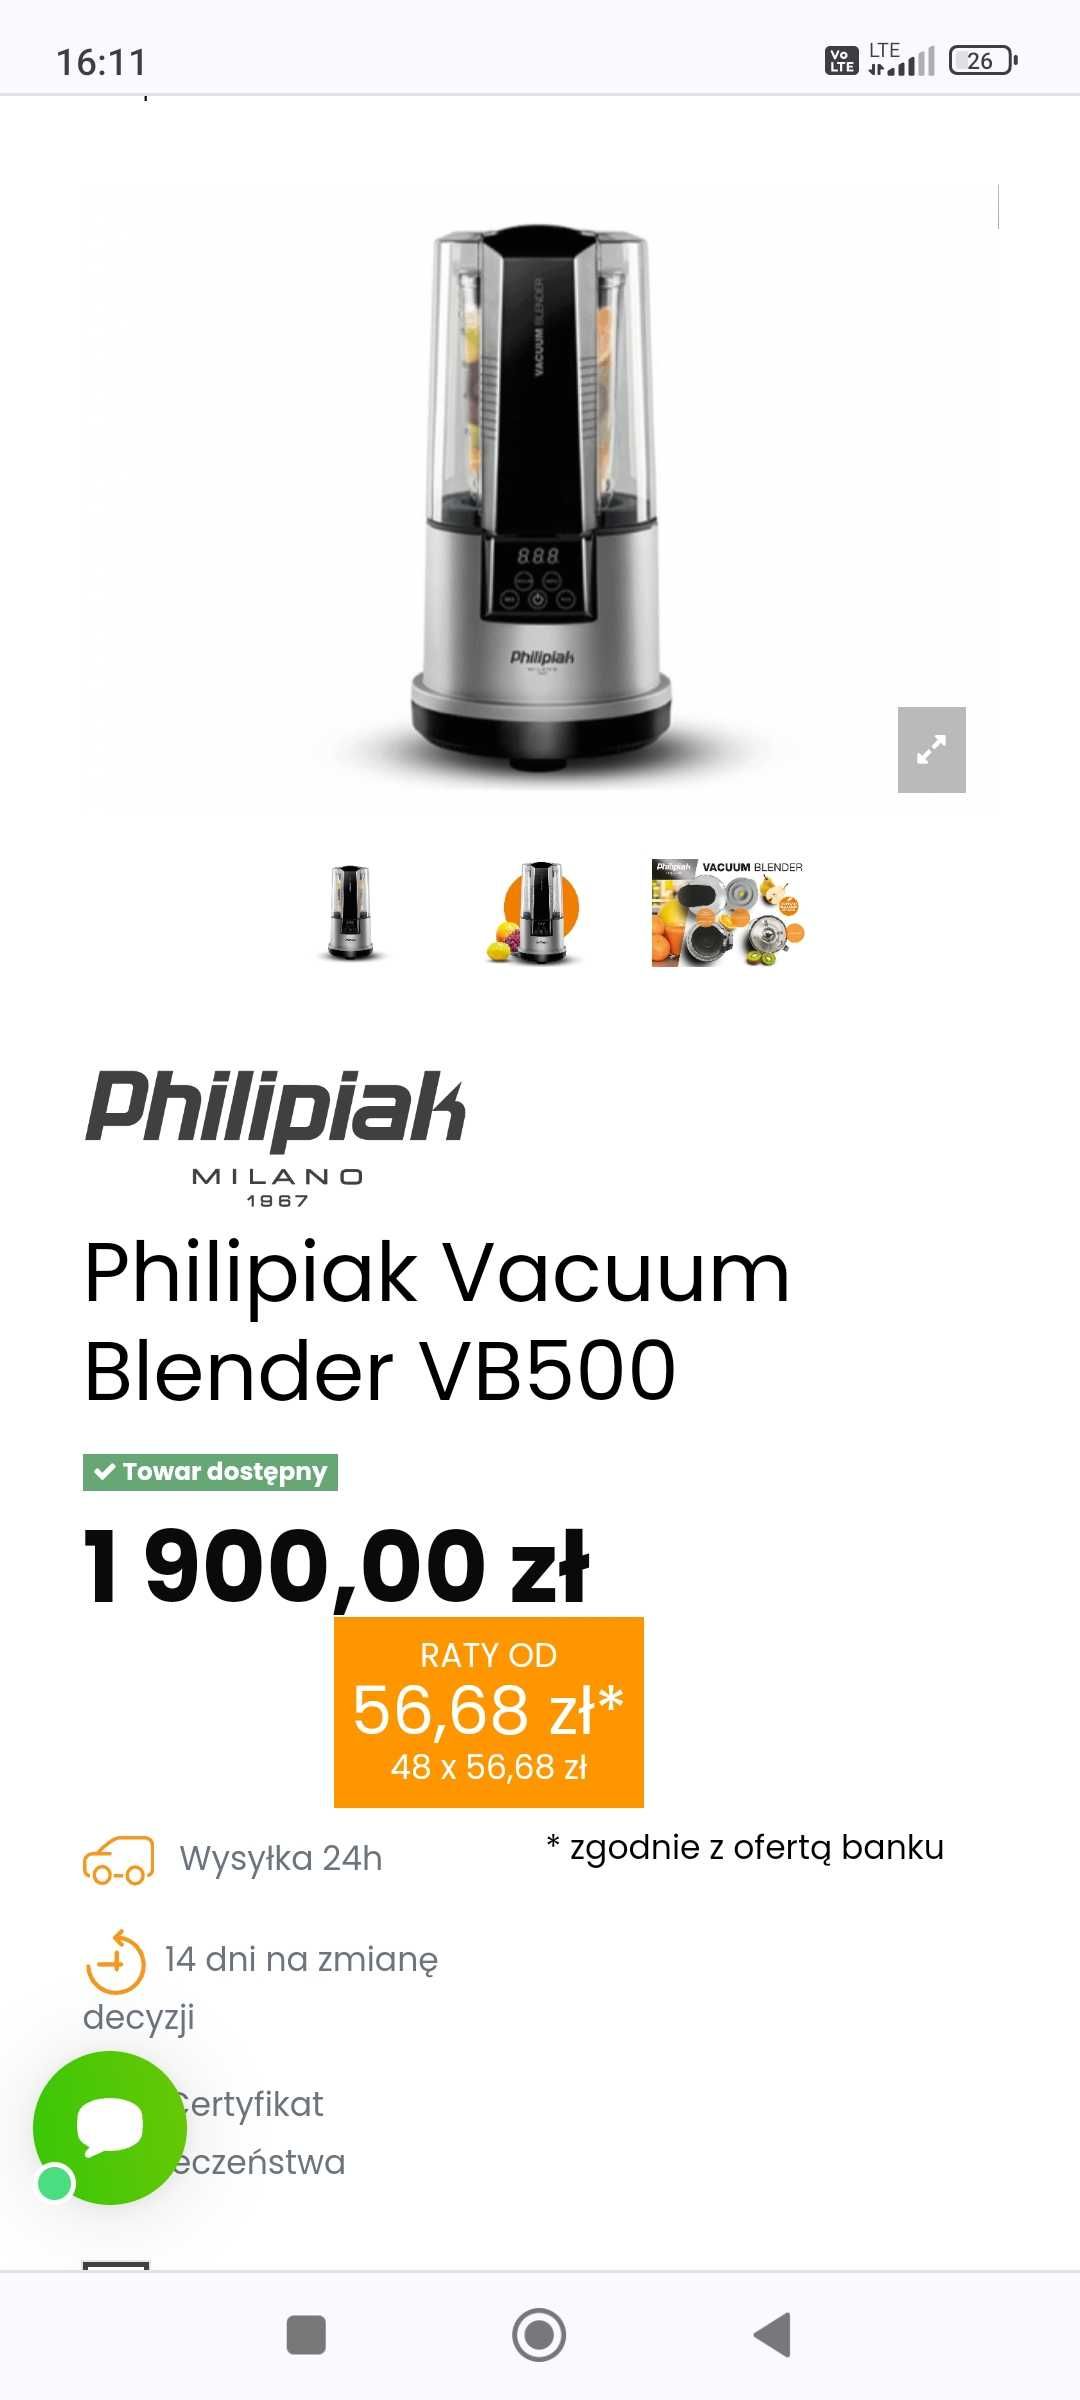 Philipiak Vacuum Blender VB500